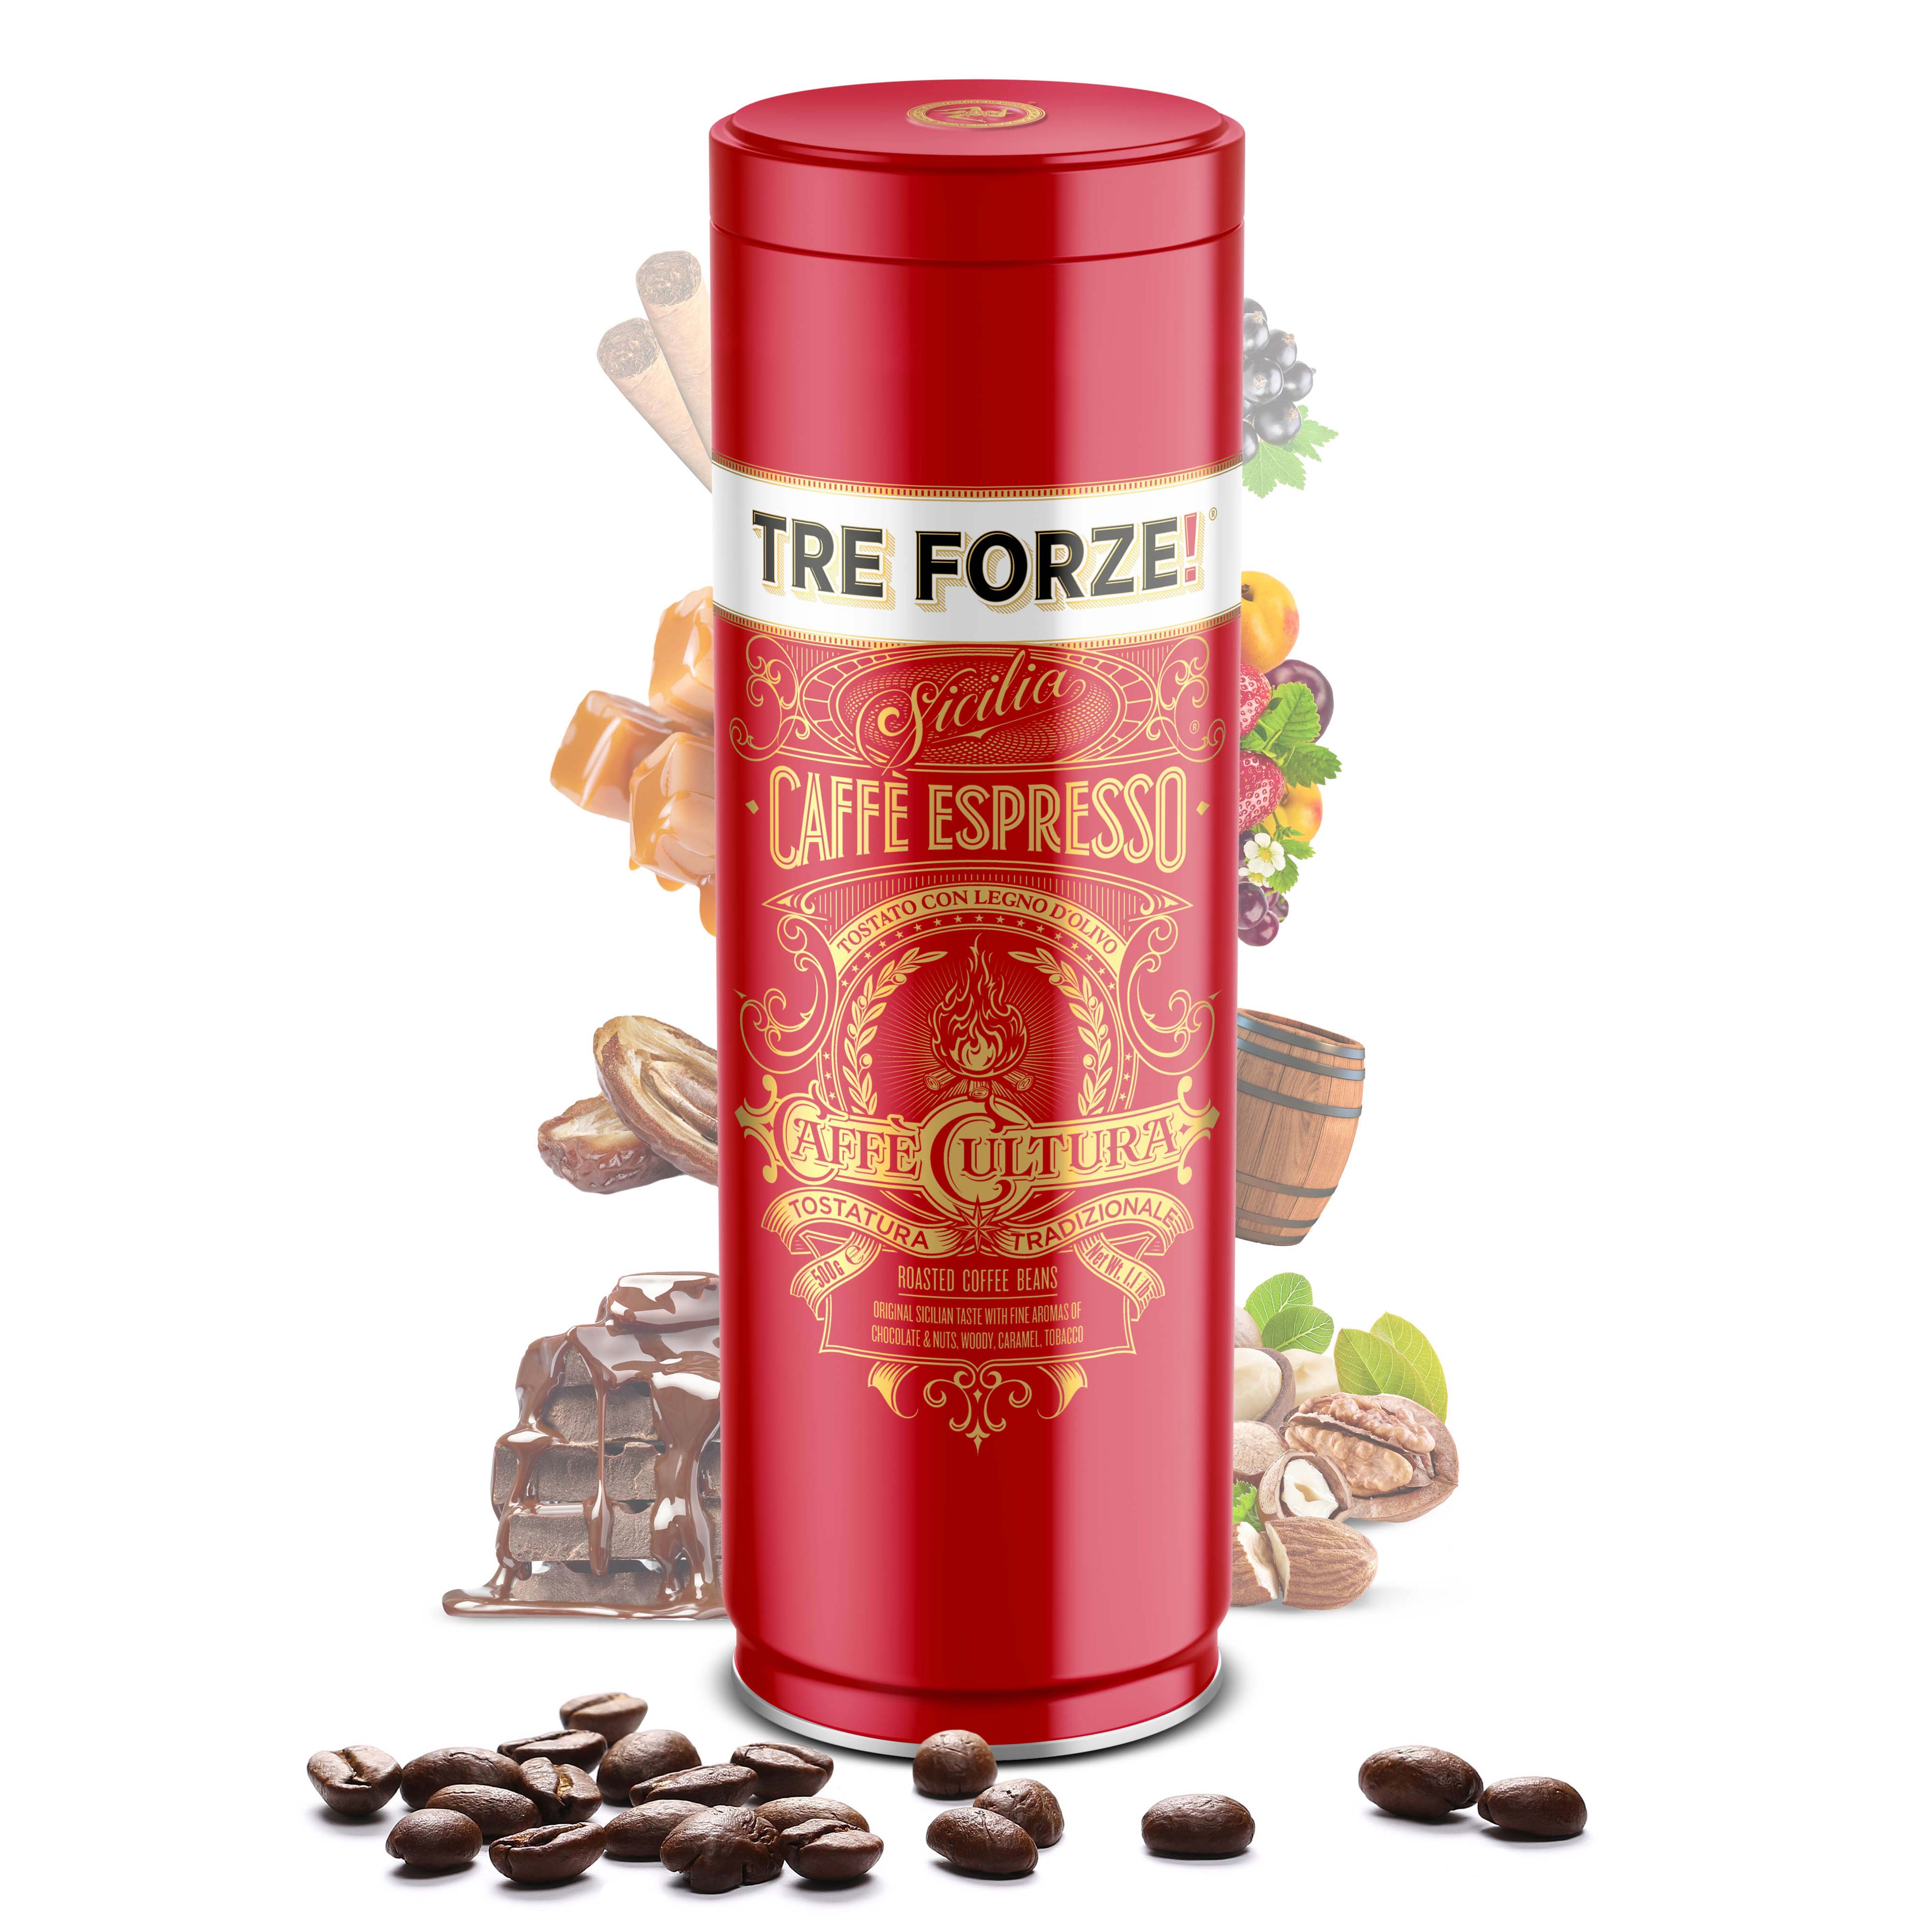 TRE FORZE! - Caffè Espresso - 500g - Beans